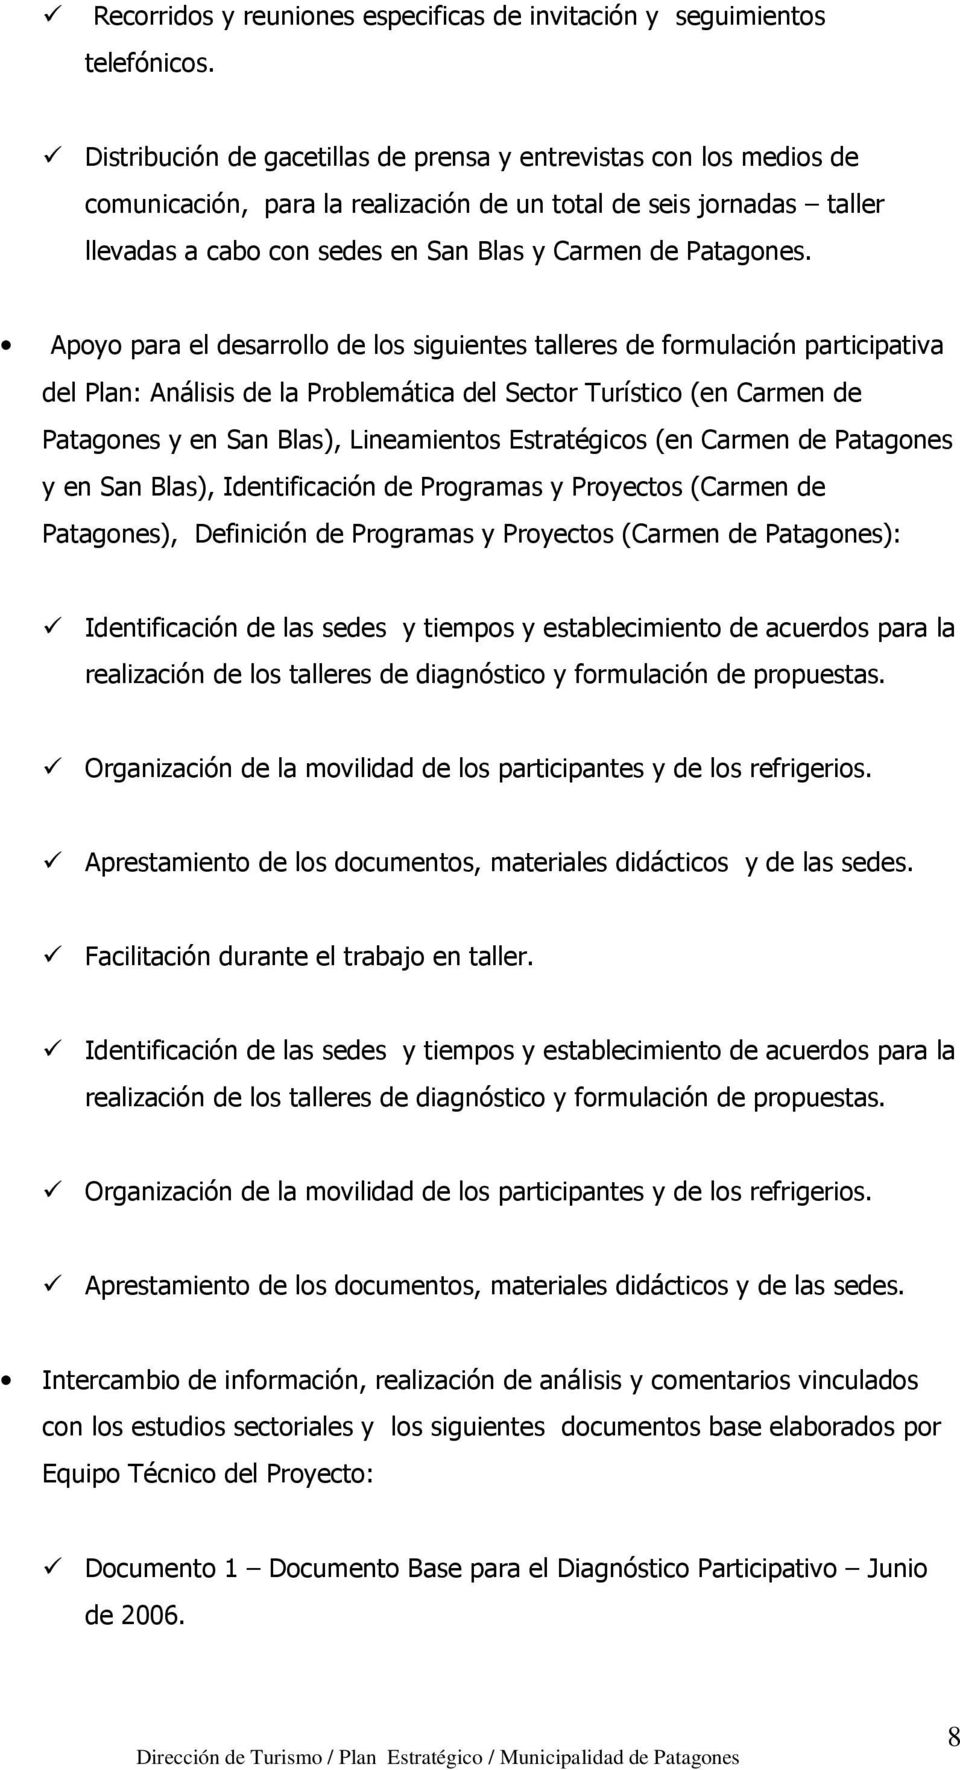 Apoyo para el desarrollo de los siguientes talleres de formulación participativa del Plan: Análisis de la Problemática del Sector Turístico (en Carmen de Patagones y en San Blas), Lineamientos